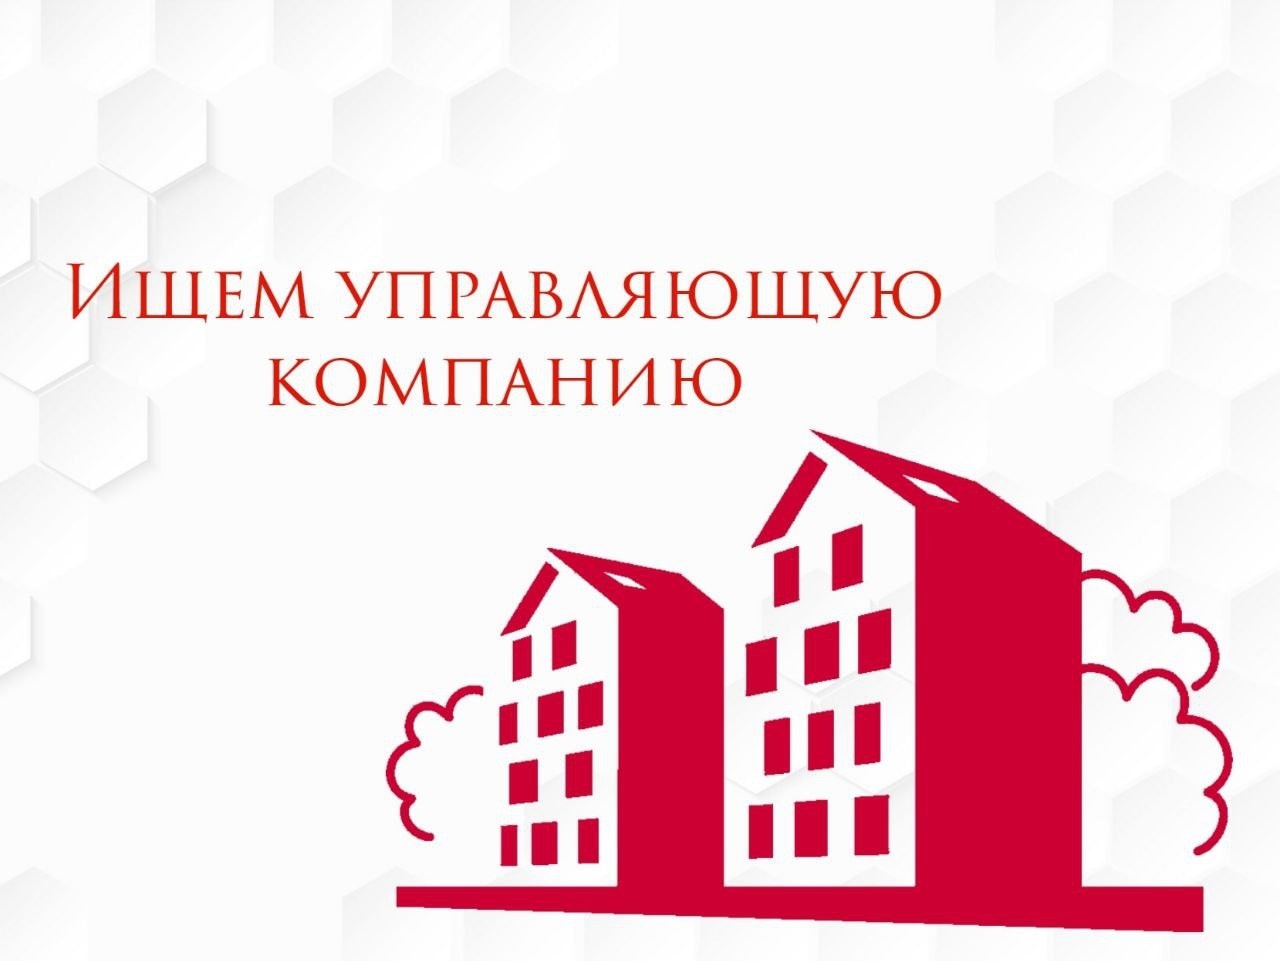 Объявление о приеме заявок на участие в открытом конкурсе по отбору управляющей организации для управления многоквартирными домами.